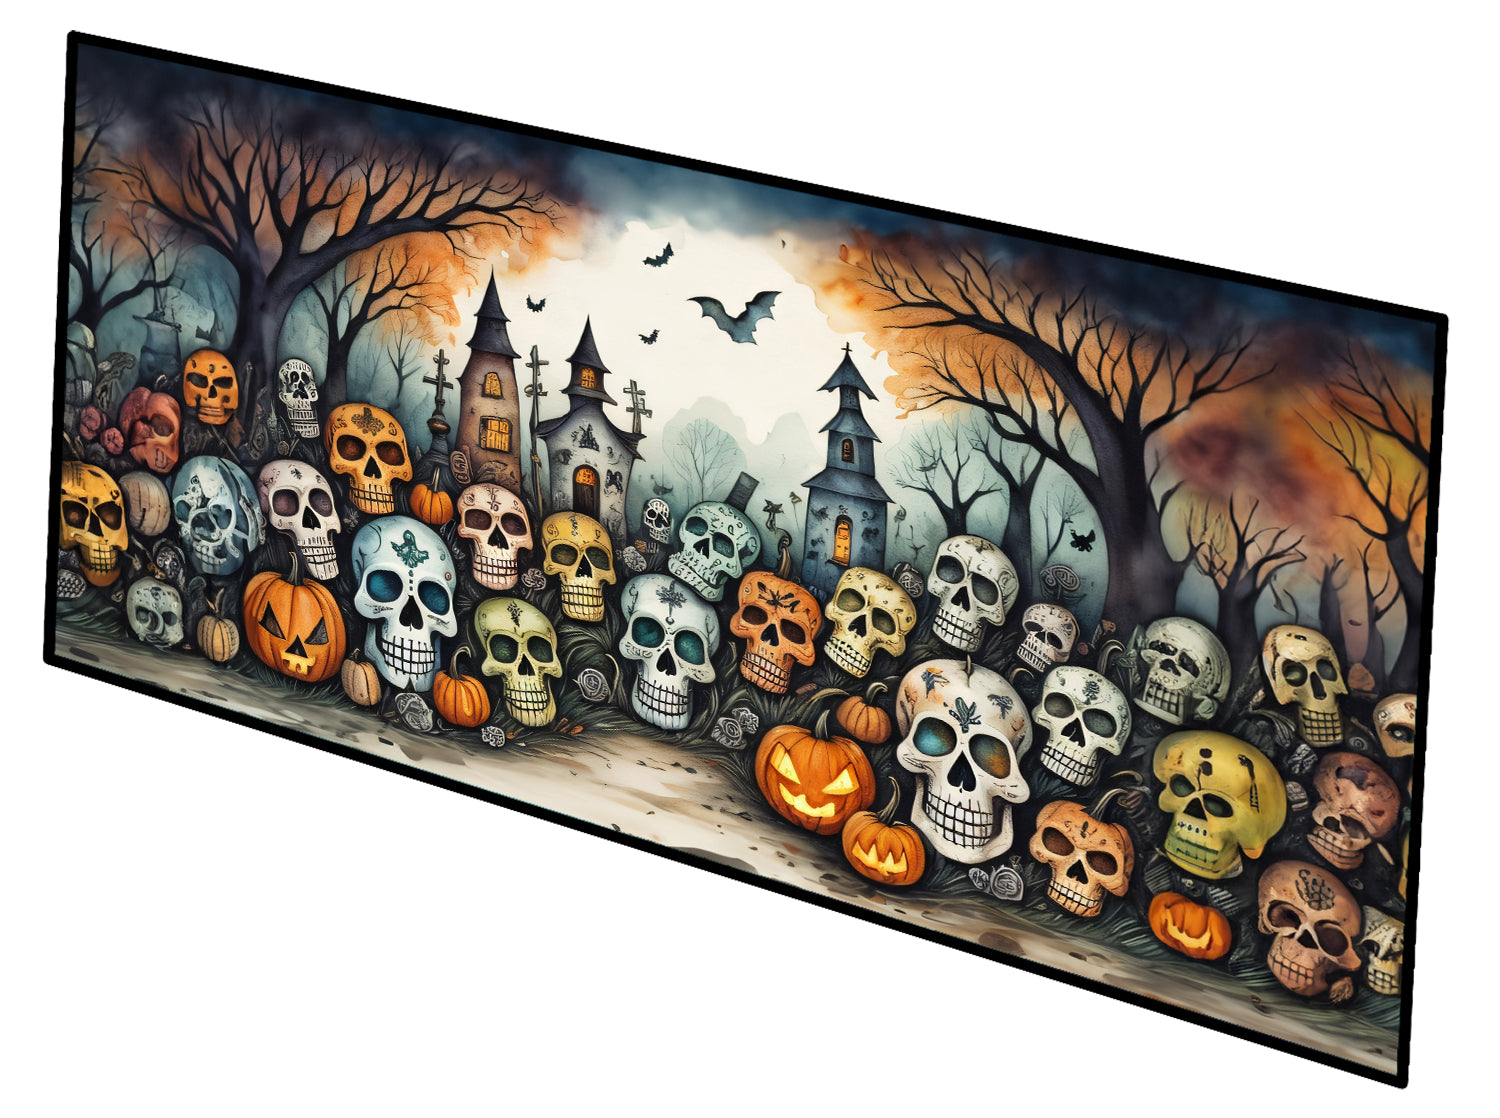 Buy this Calaveras Sugar Skulls Spooky Halloween Indoor / Outdoor Runner Mat 28x58